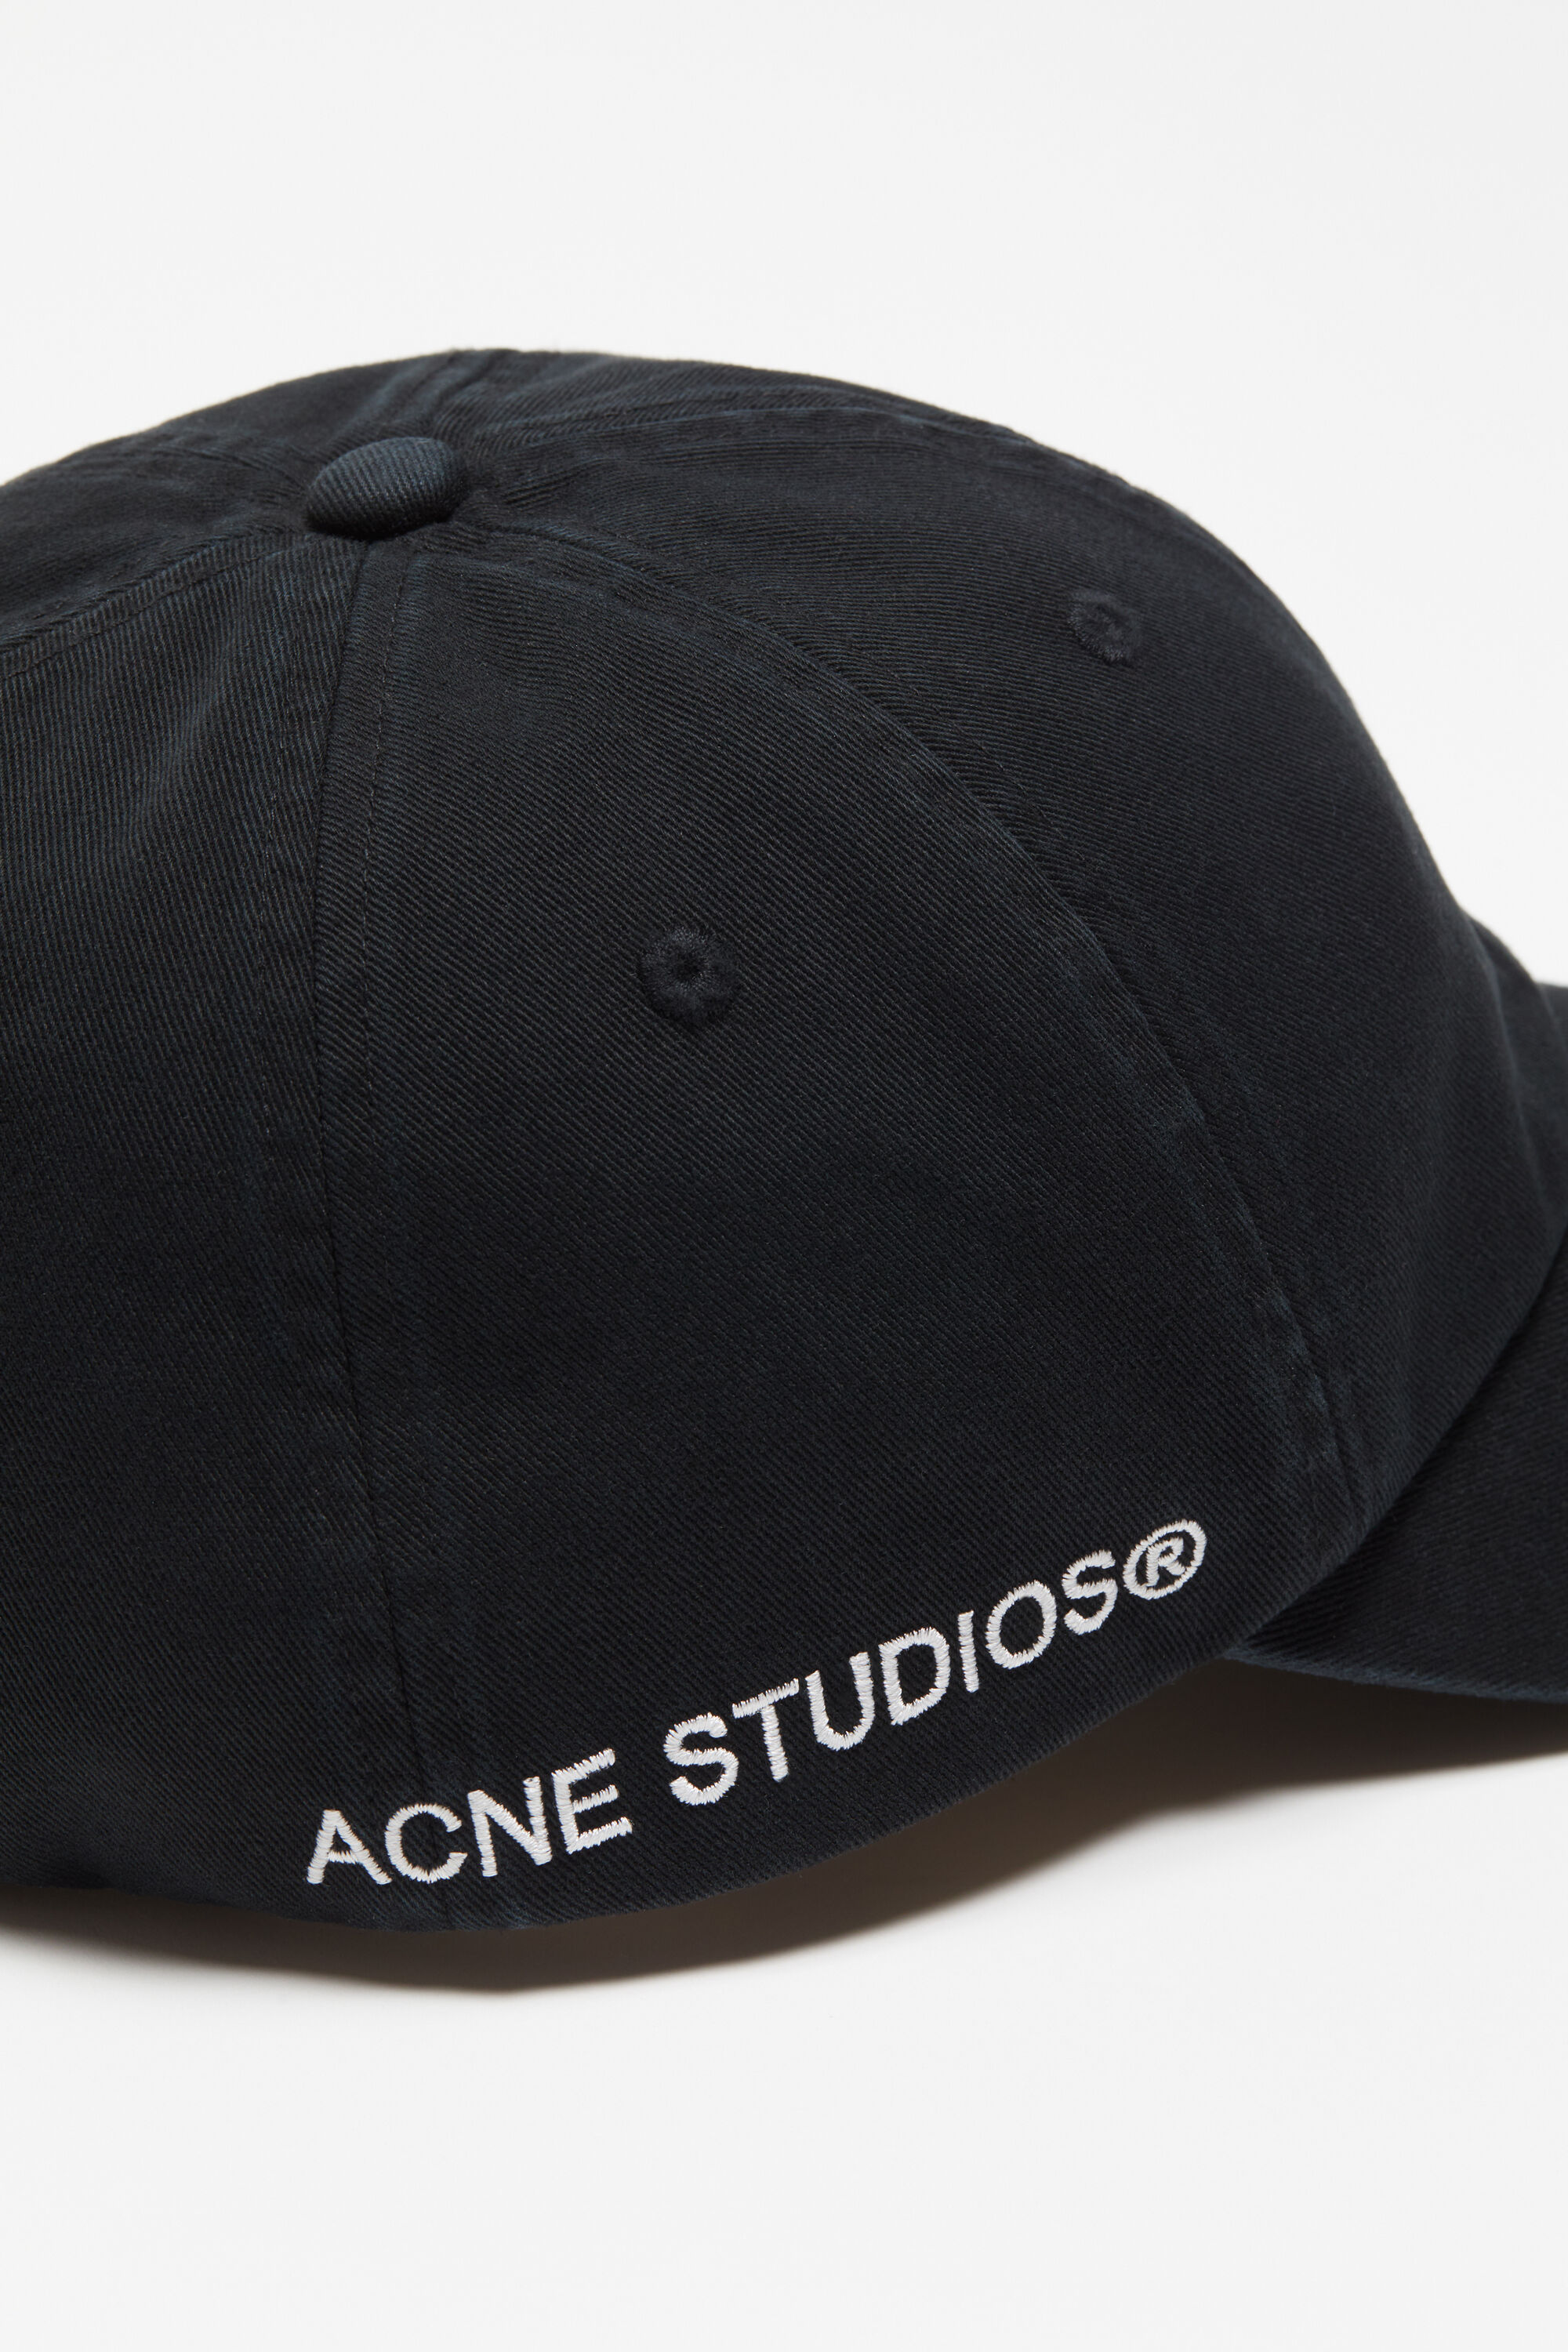 Acne Studios - ツイルキャップ - ブラック